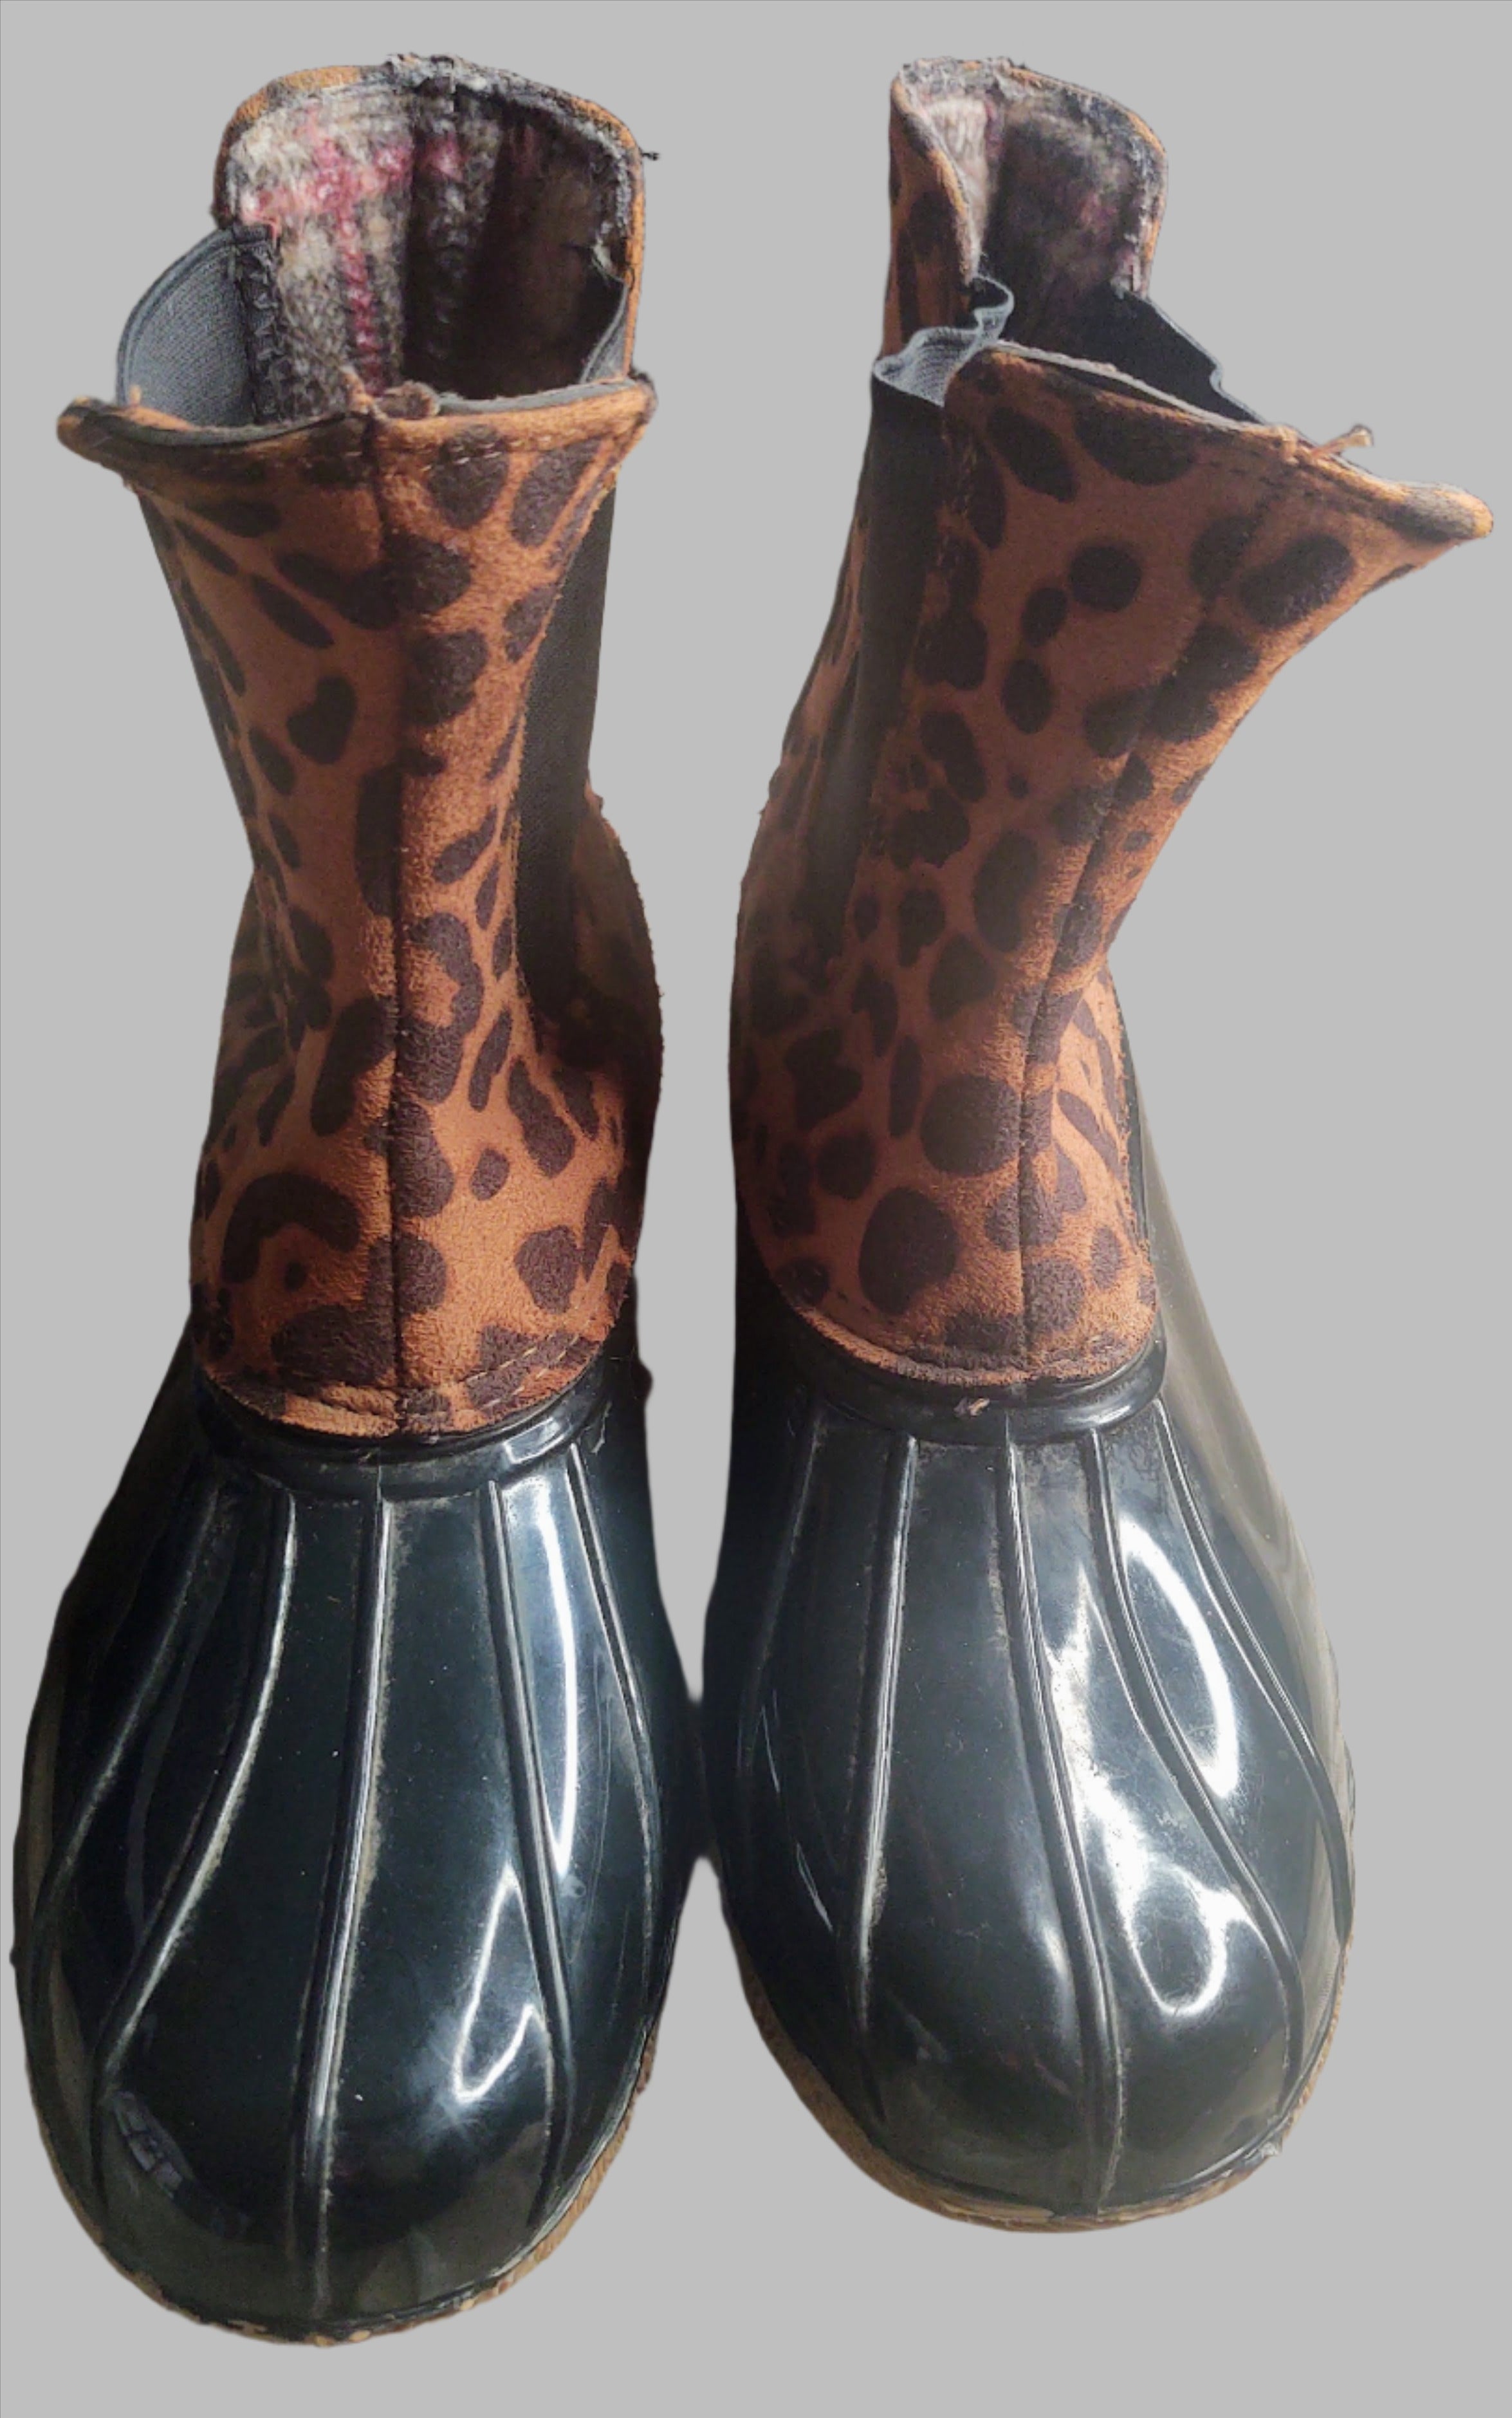 Botas de mujer estilo Duck de segunda mano con ribete de leopardo - Talla 8 (recogida gratuita en Manchester, KY)